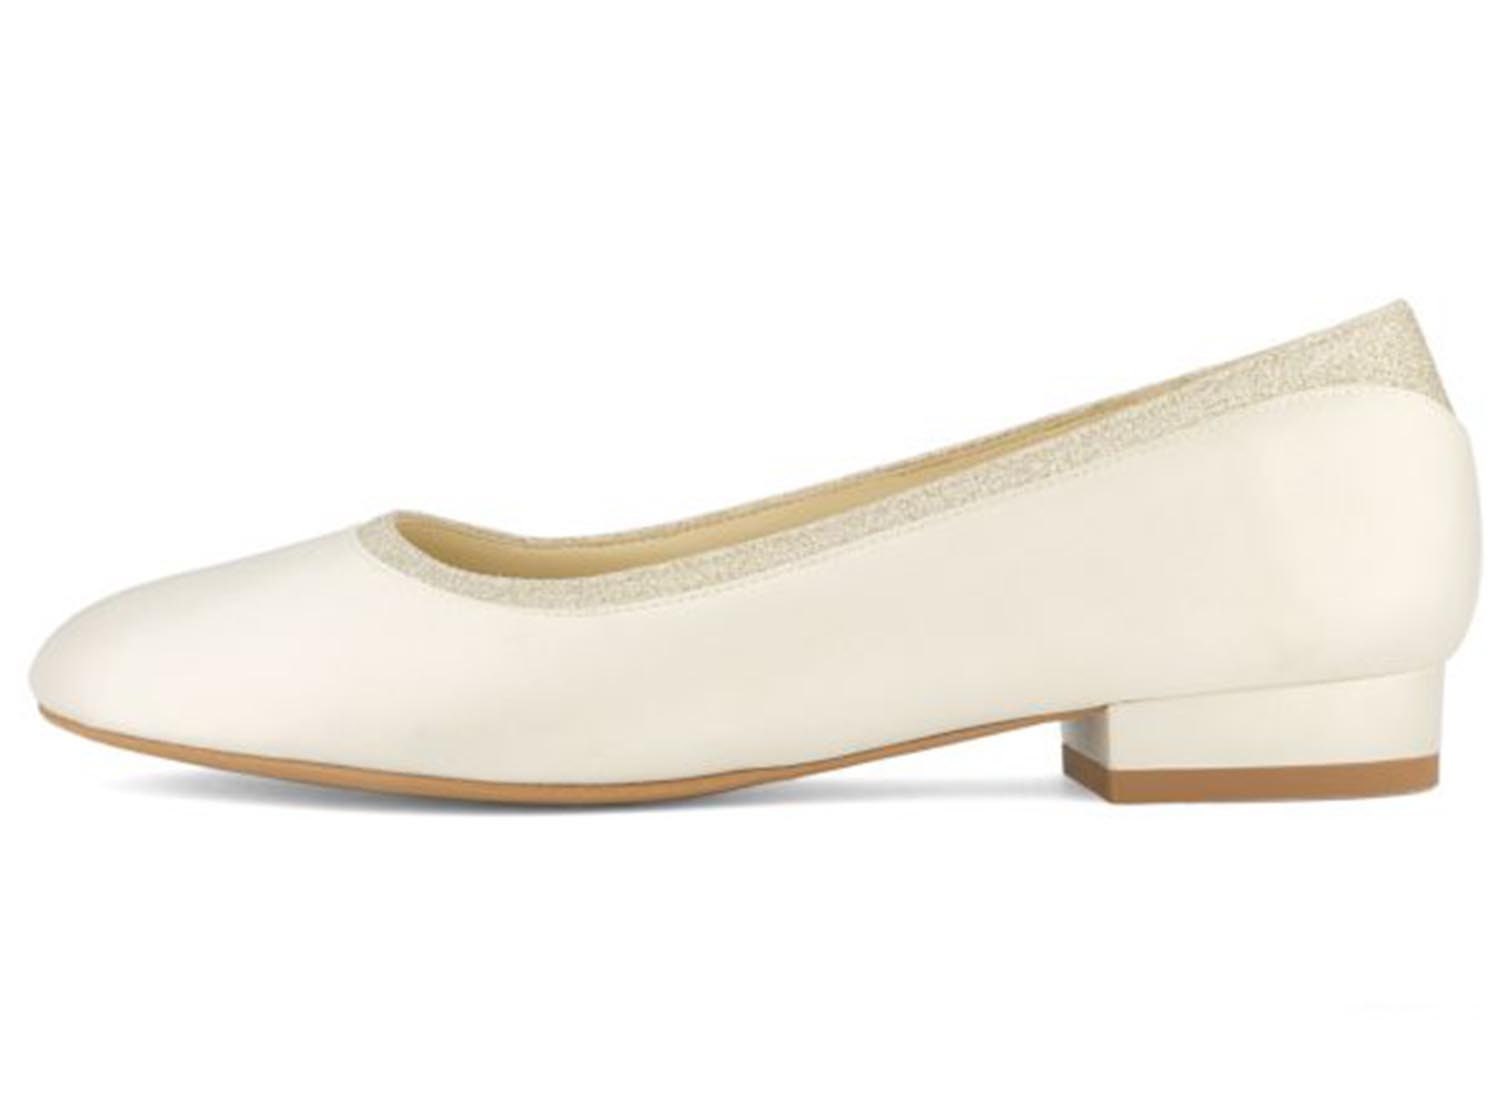 Ivory Satin Flat Wedding Shoes Ivory Bridal Low Heel Shoes - Etsy UK